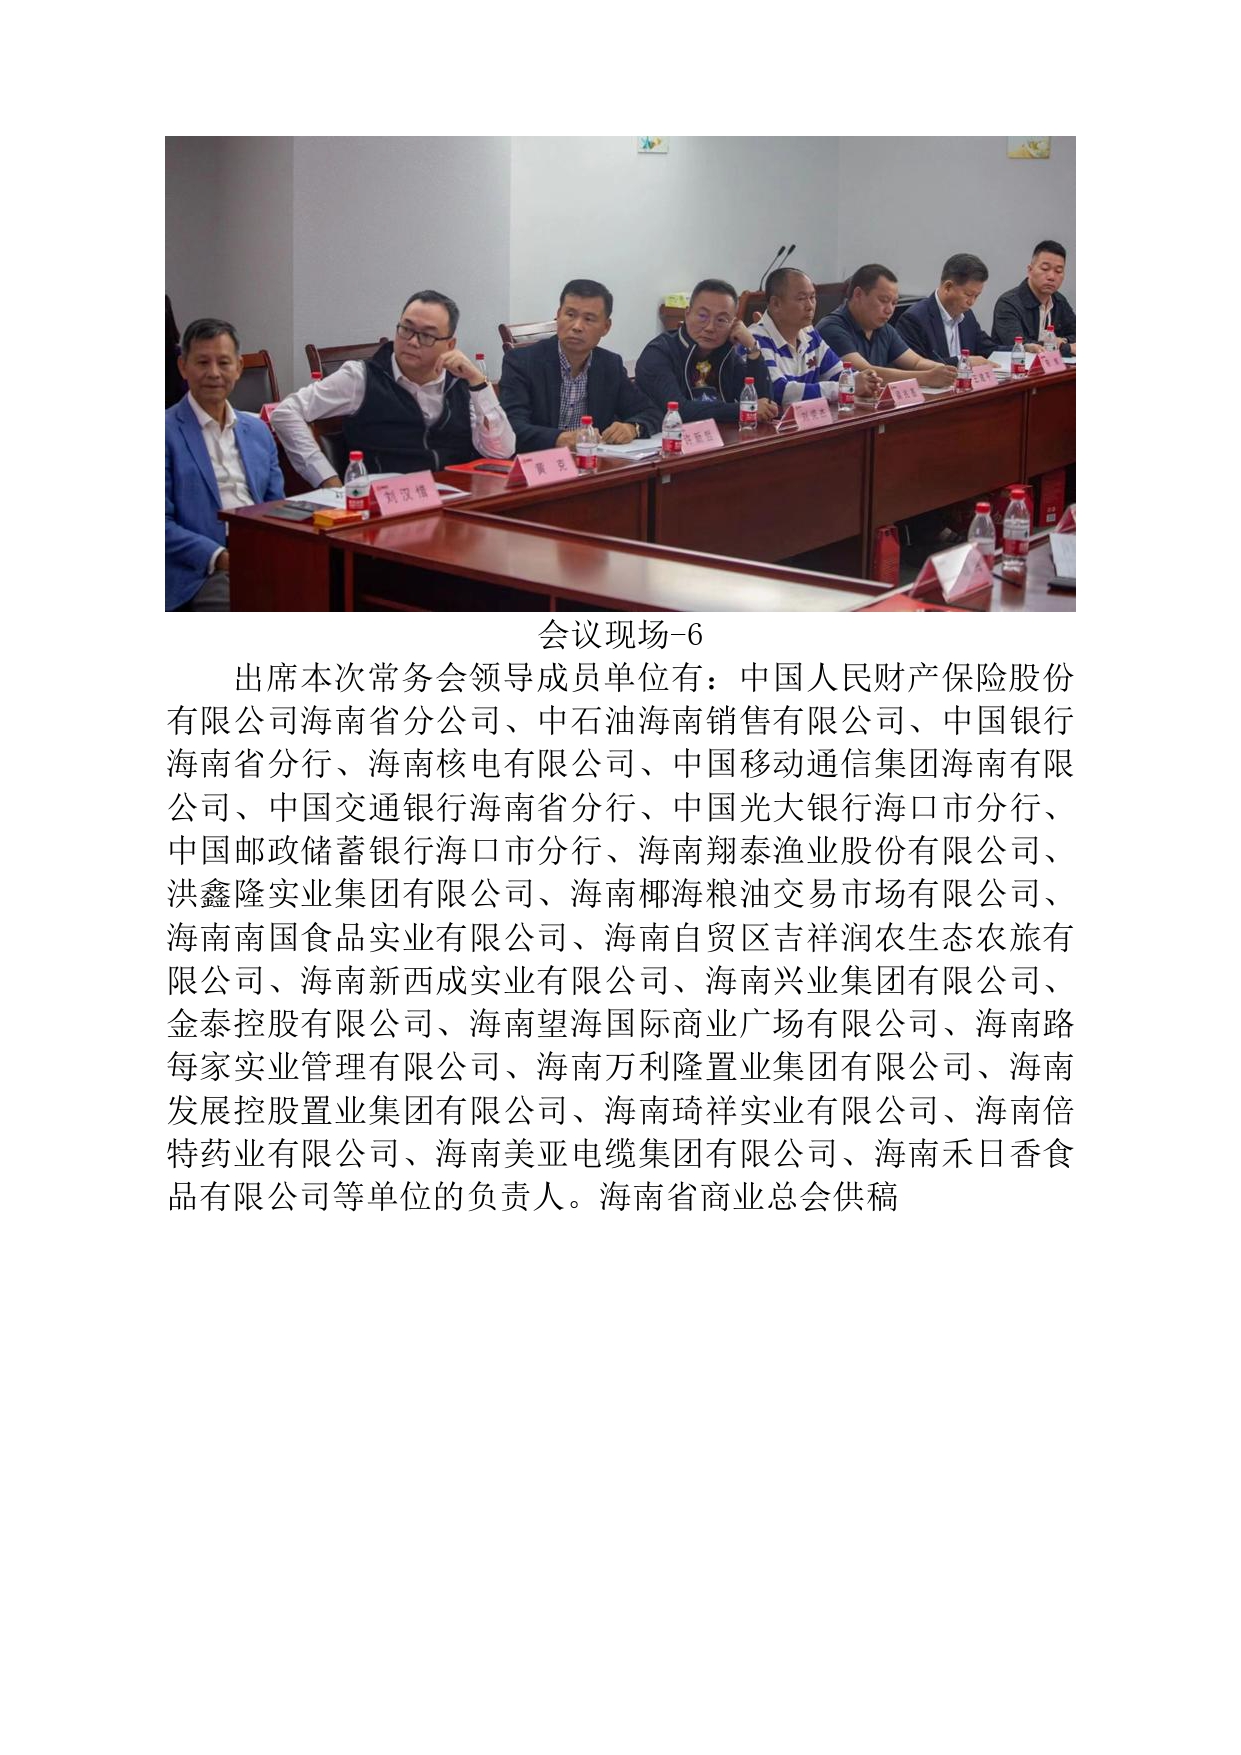 海南省商业总会第五届二次全省代表大会拟于12月12日在海口召开。_page-0004.jpg